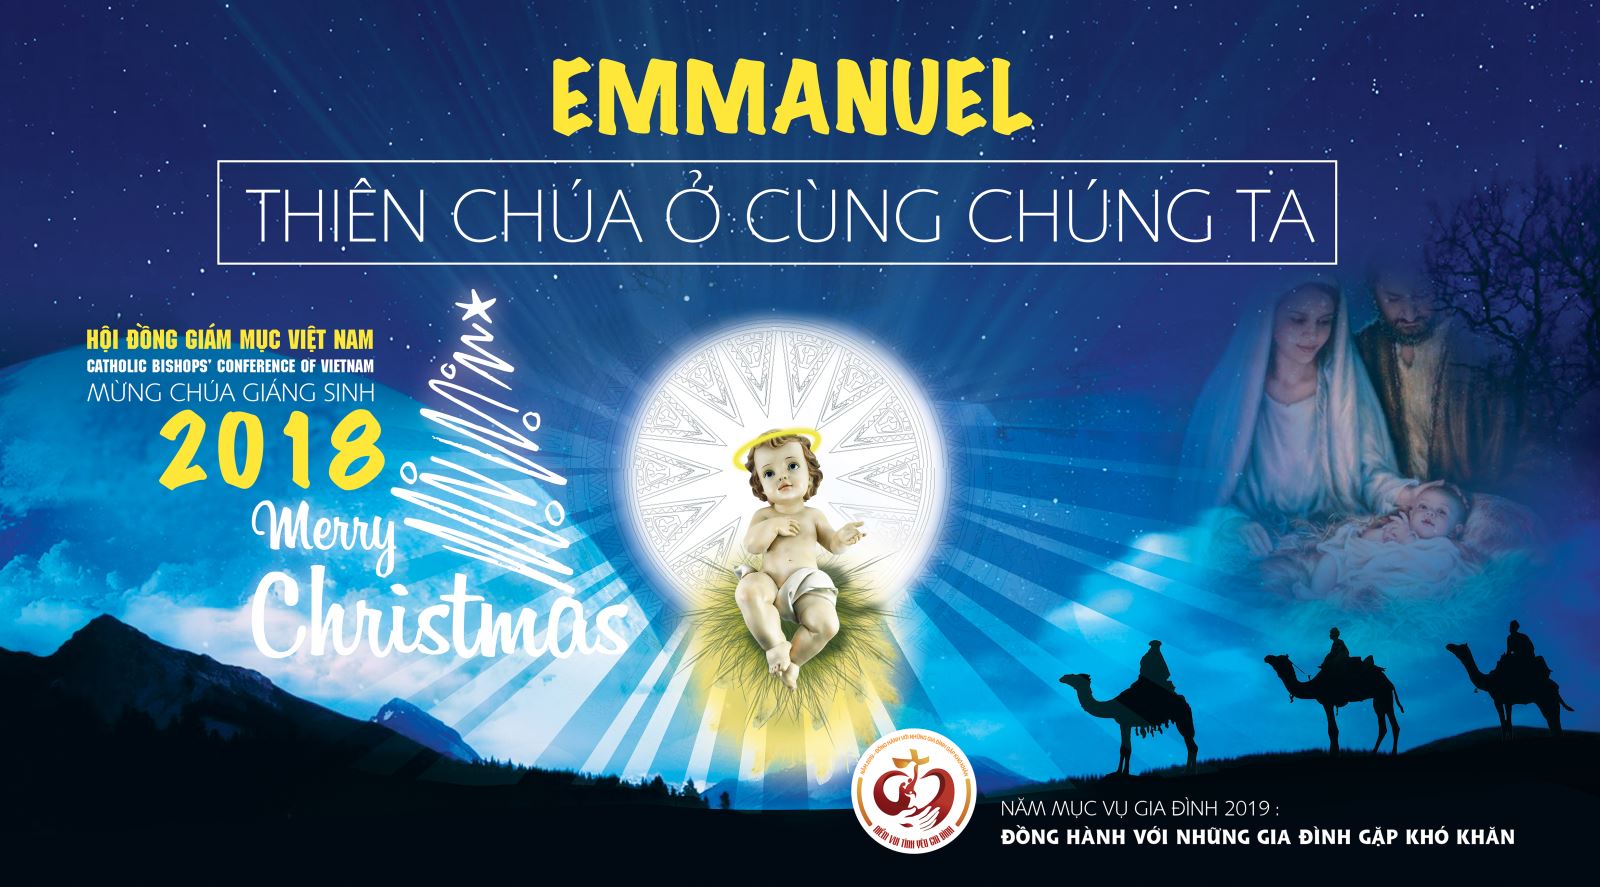 Thiệp chúc mừng Giáng Sinh 2018 của Hội đồng Giám mục Việt Nam